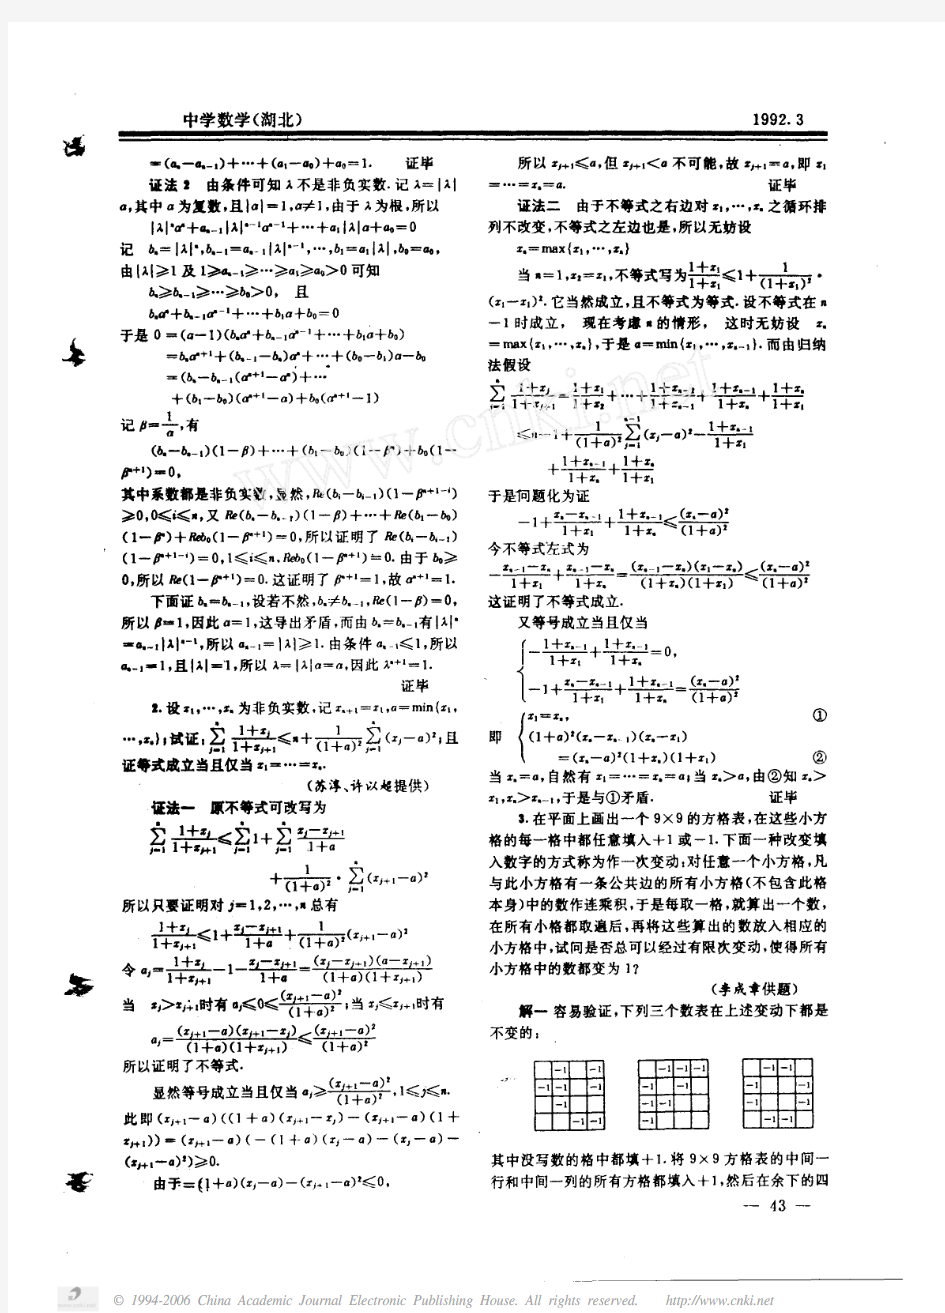 1992中国数学奥林匹克试题及解答